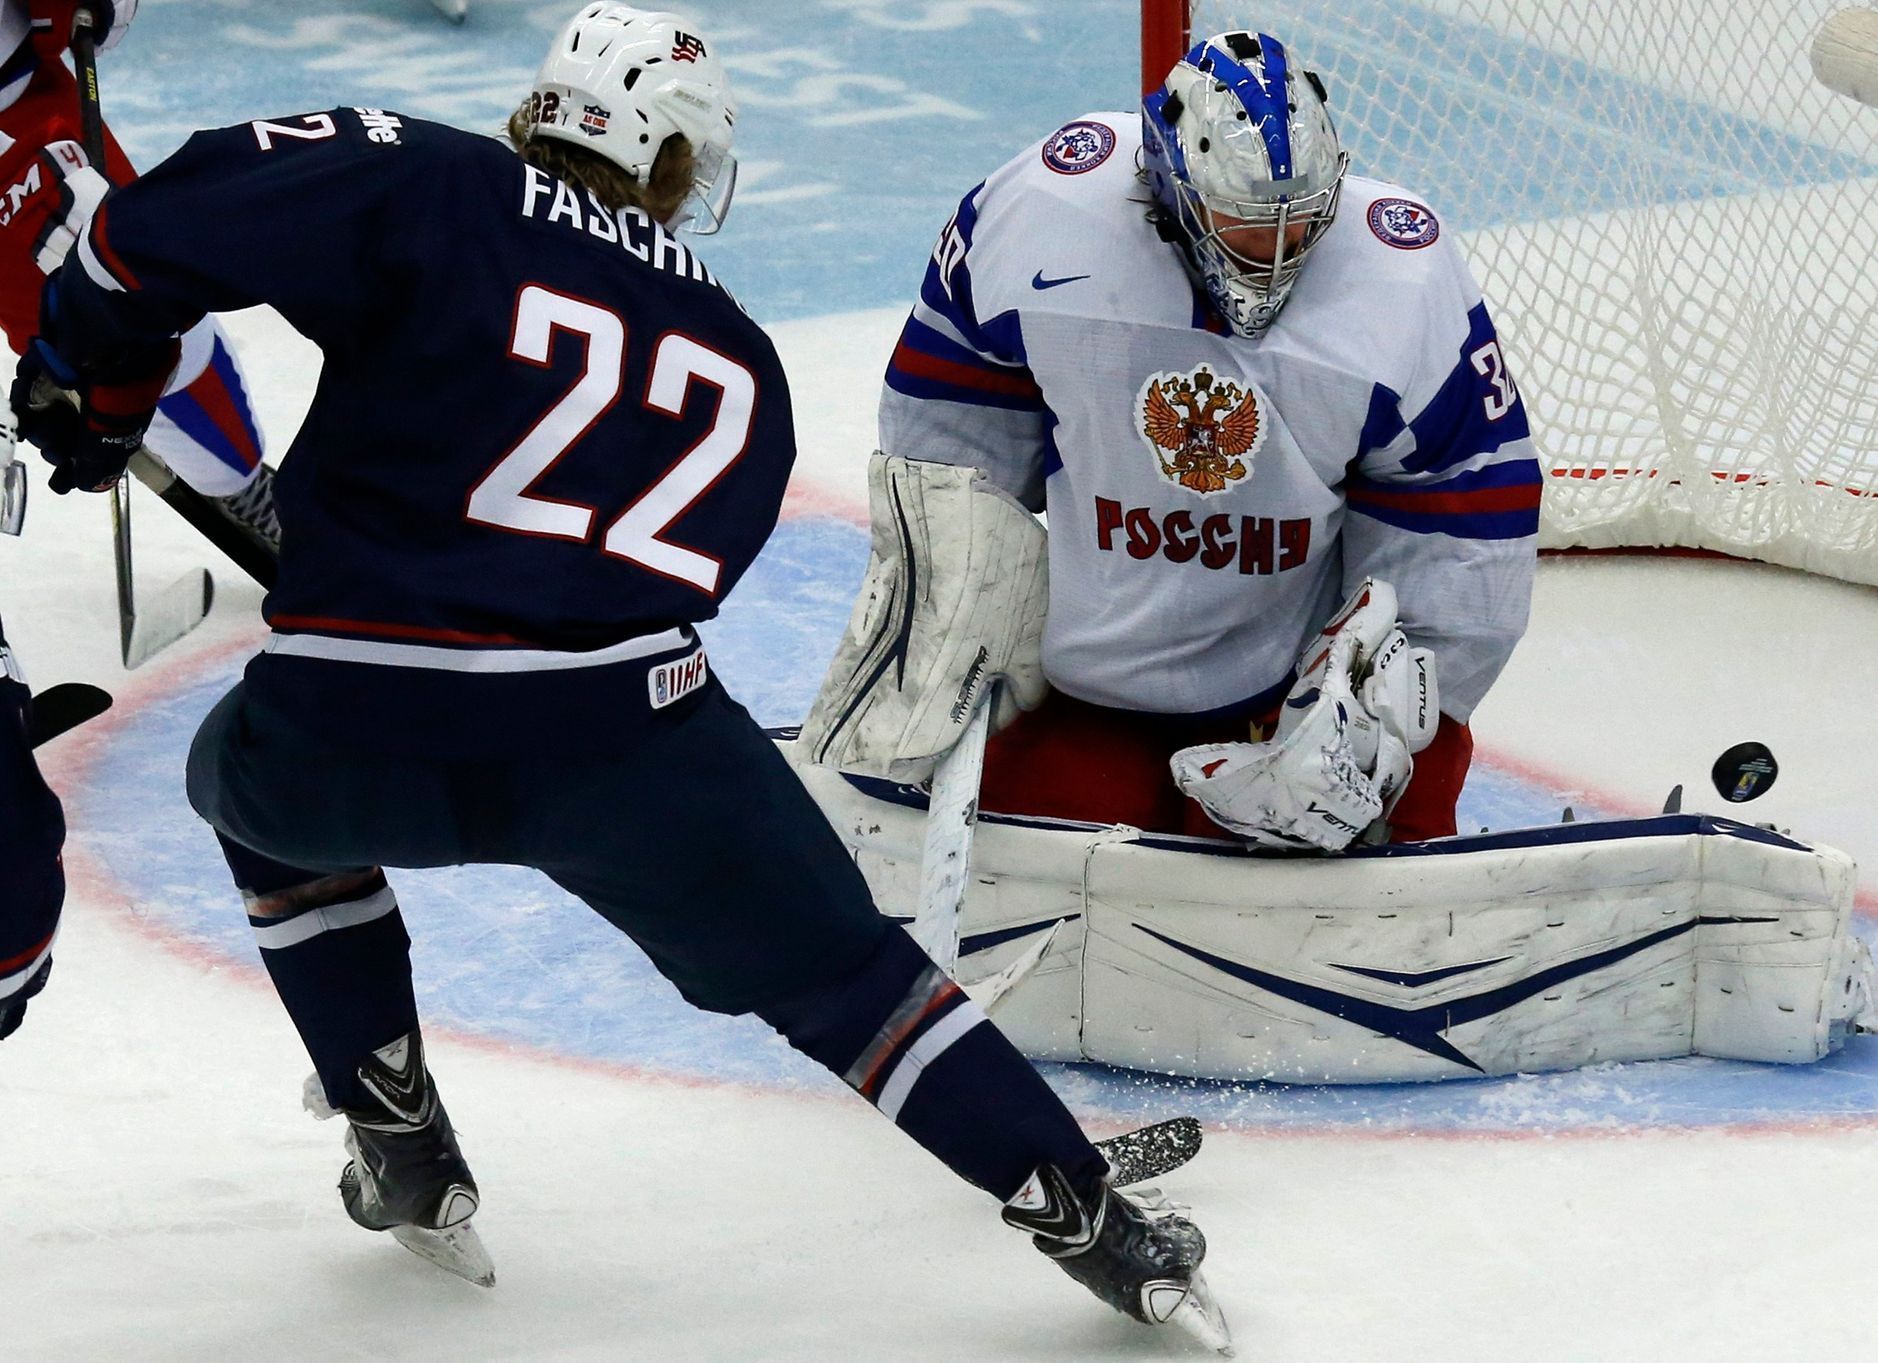 MS juniorů 2014: čtvrtfinále Rusko - USA (Vasilevsikj, Fasching)